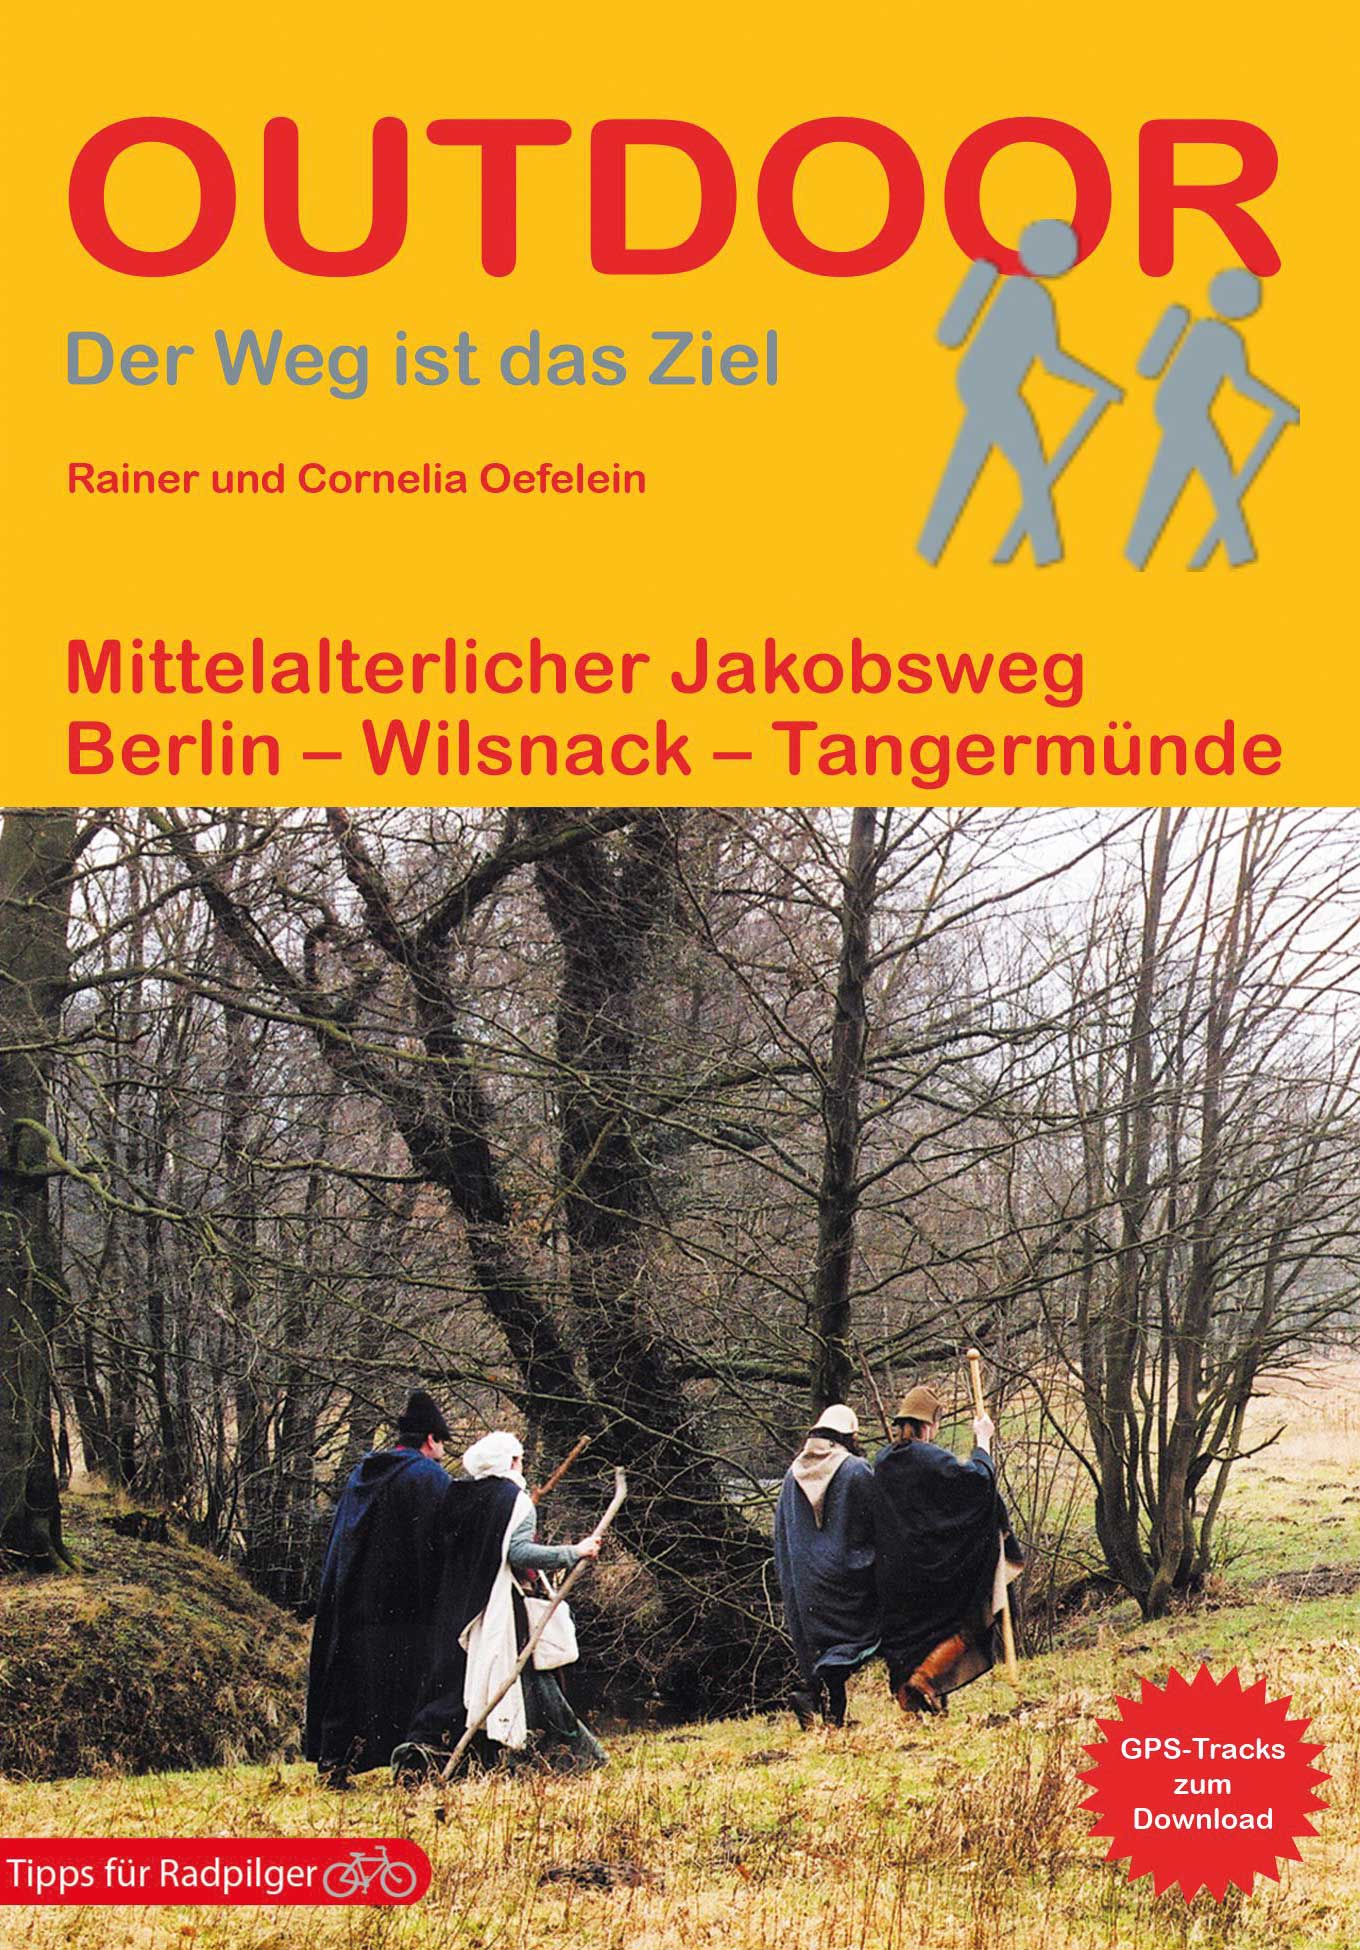 Online bestellen: Wandelgids Mittelalterlicher Jakobsweg (Brandenburg) | Conrad Stein Verlag